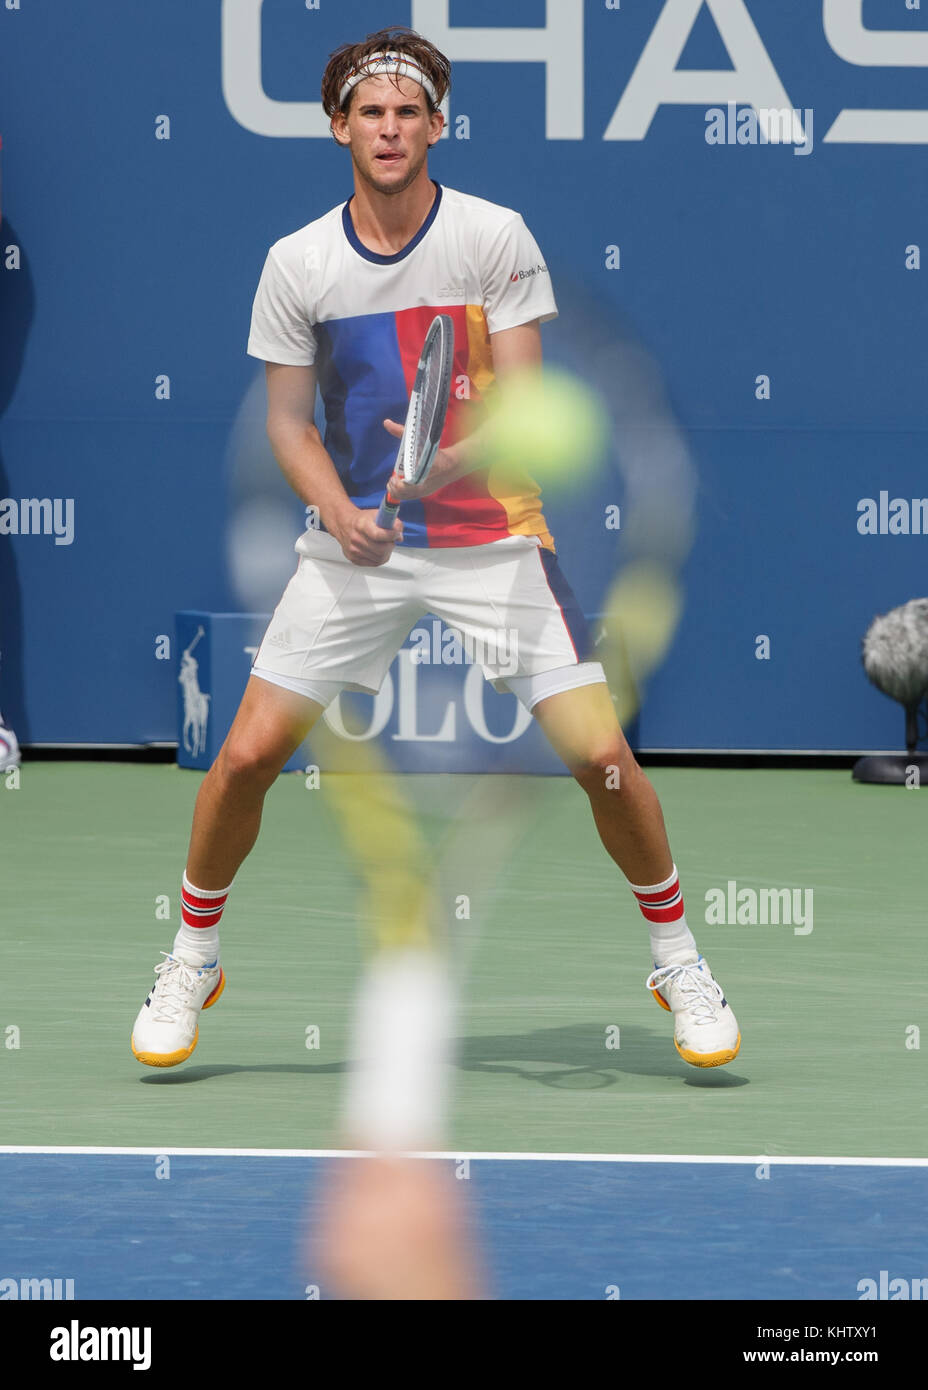 Austrian giocatore di tennis dominic thiem (Aut) in attesa di servire a us open 2017 tennis championship, new york city, nello stato di new york, Stati Uniti. Foto Stock